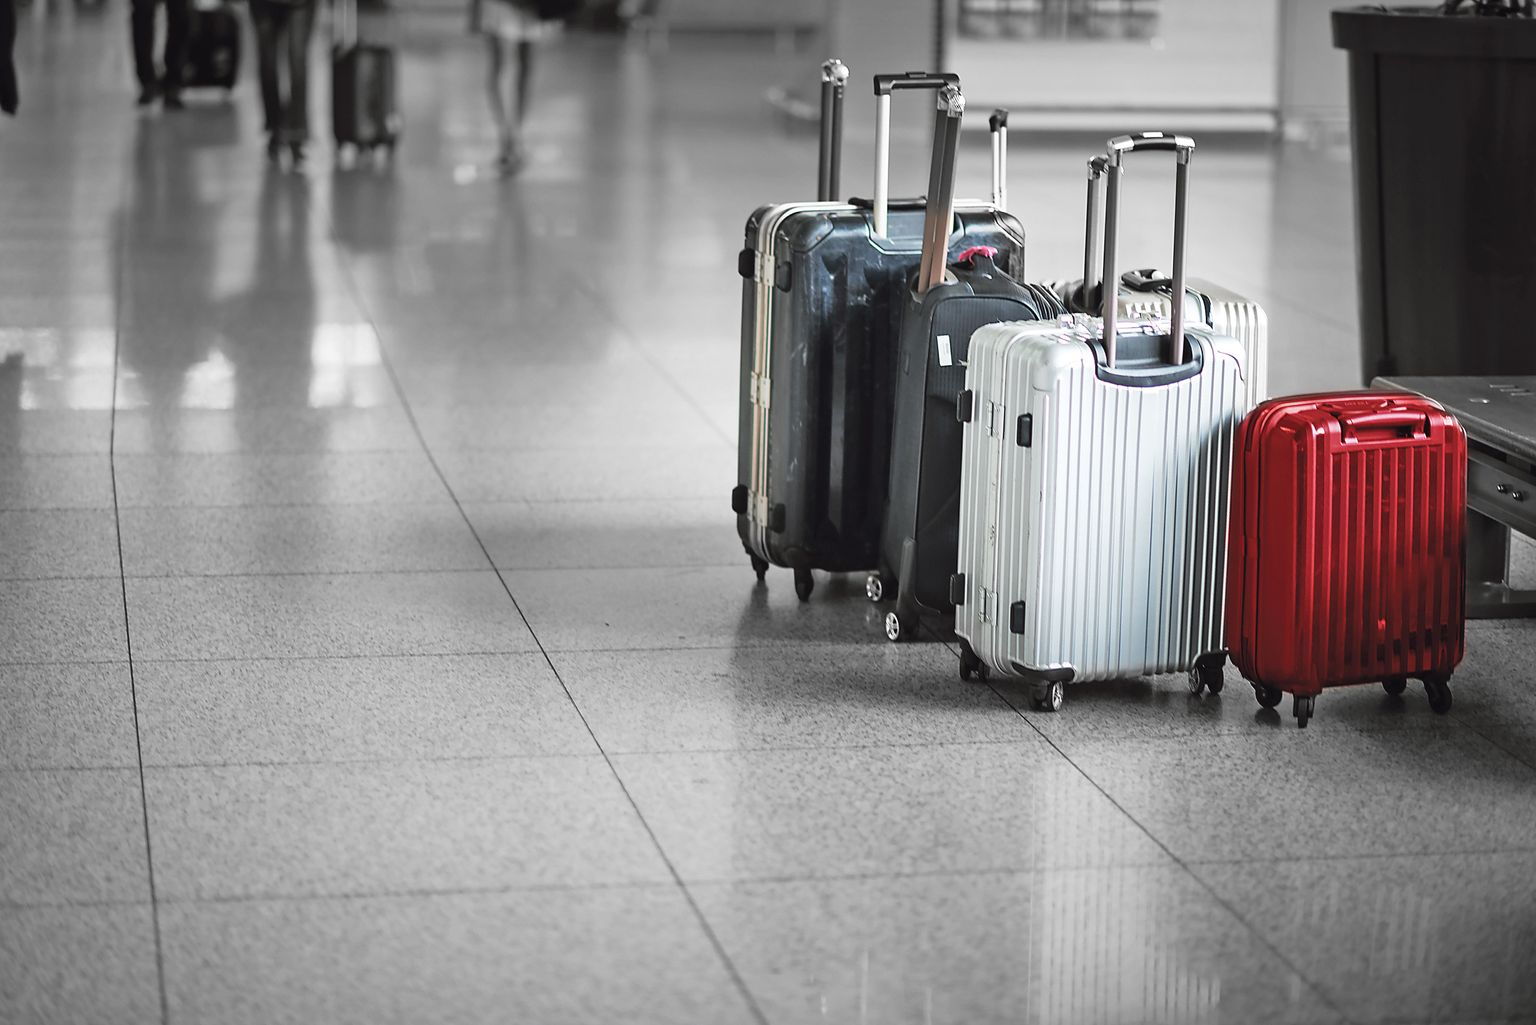 Арунас Скуя уверен, что если бы каждый пассажир брал с собой меньше багажа – хотя бы на один килограмм, это сэкономило бы много авиационного топлива.